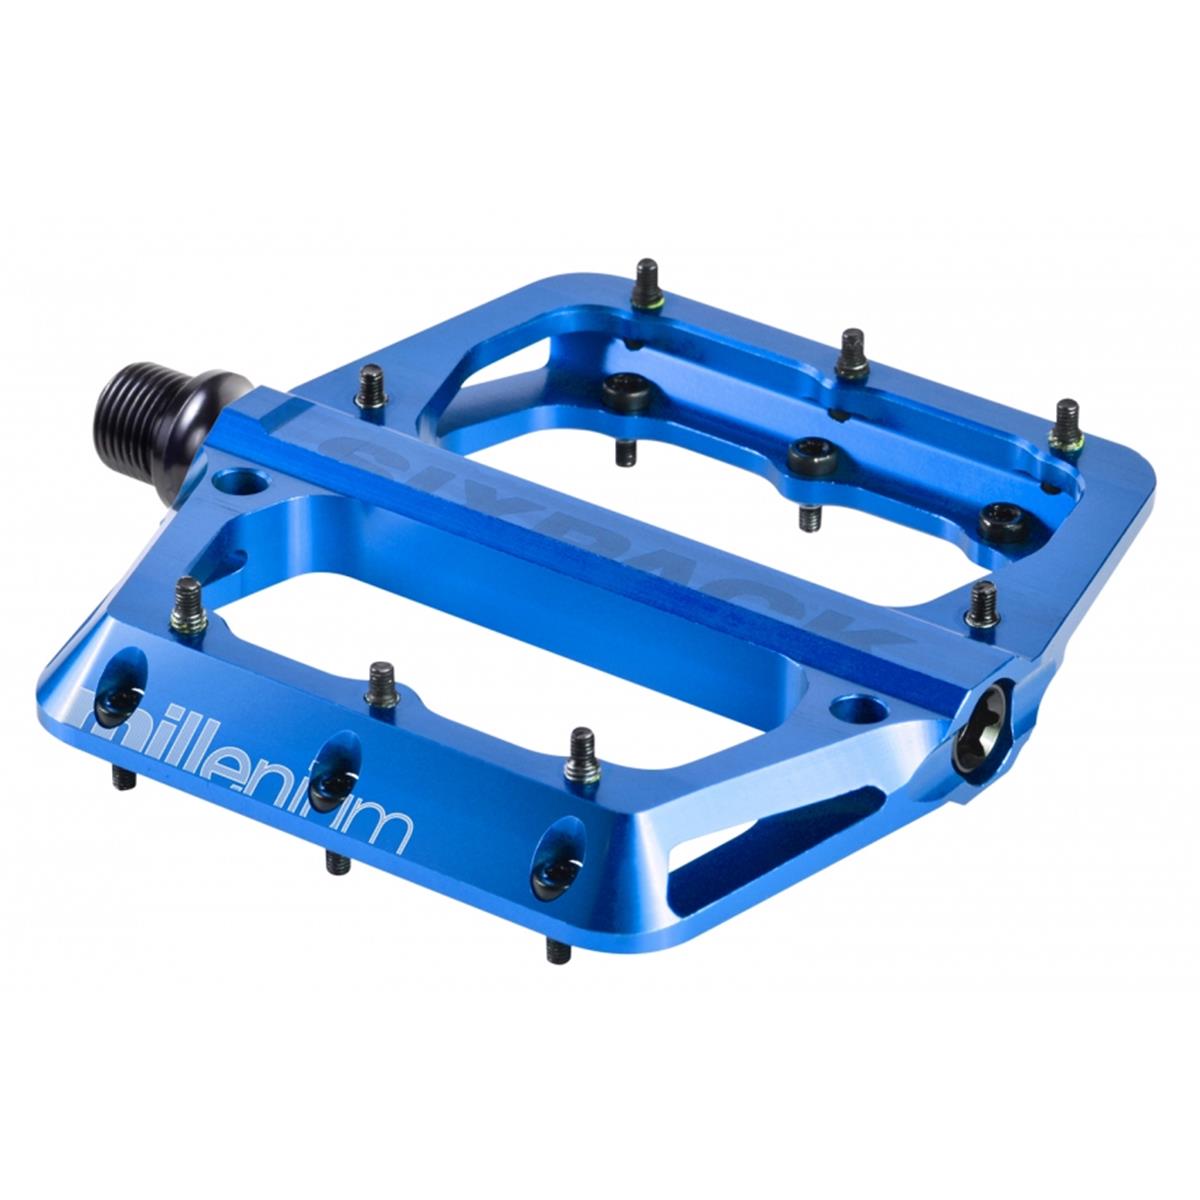 Sixpack Pédales Millenium 2.0 Blue, 105x110 mm, 32 M4 Pins, 1 Pair